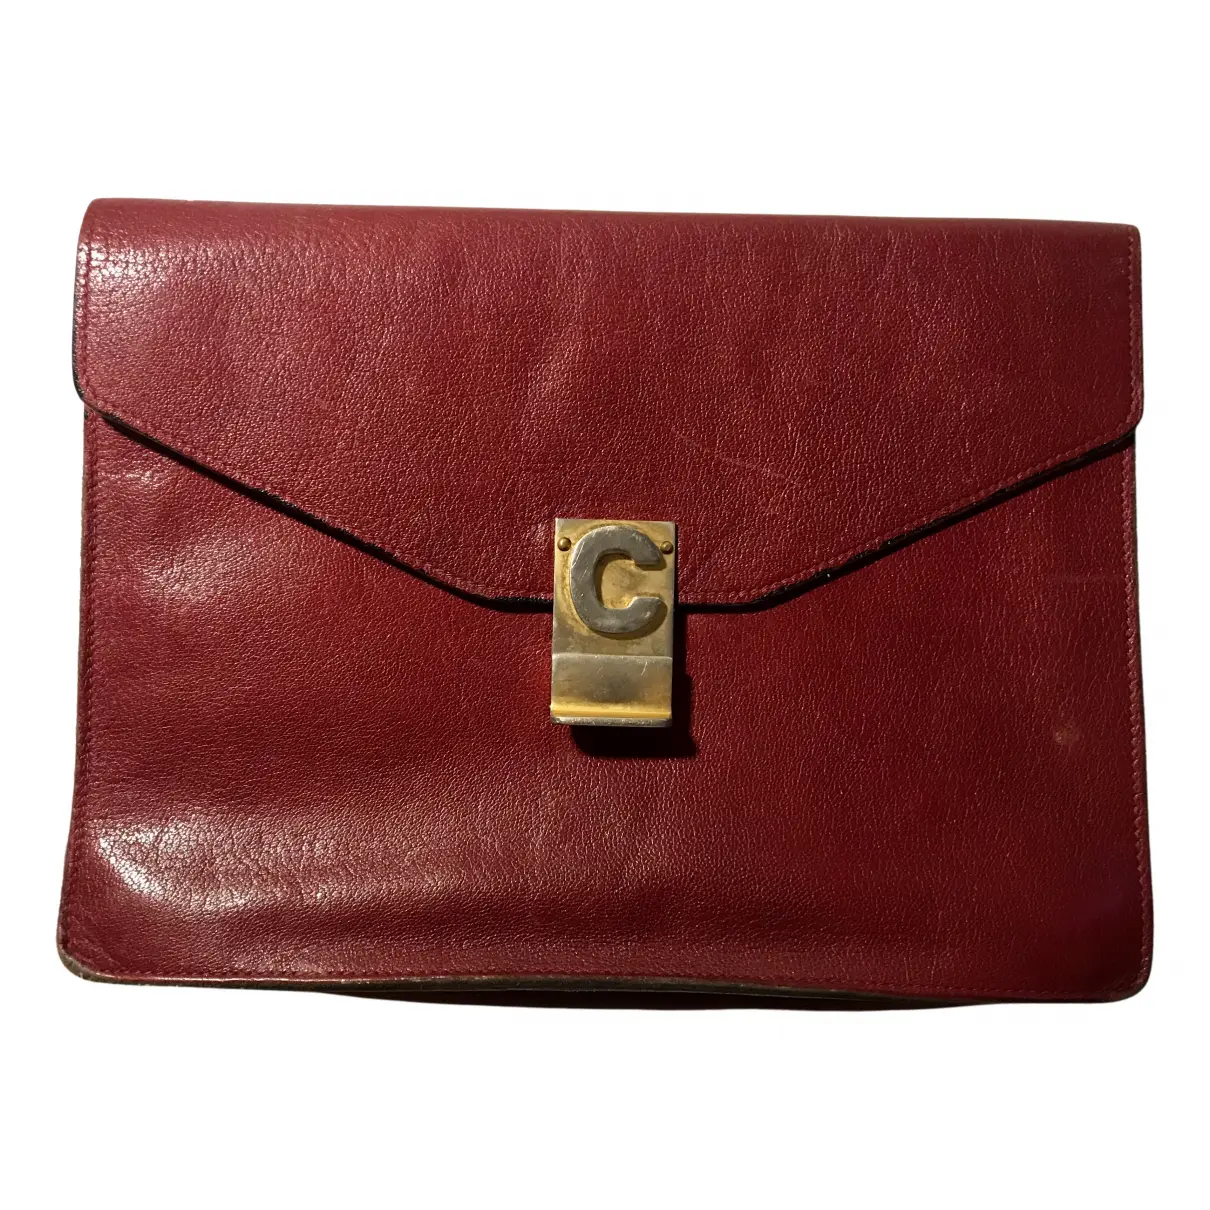 Leather clutch bag Celine - Vintage